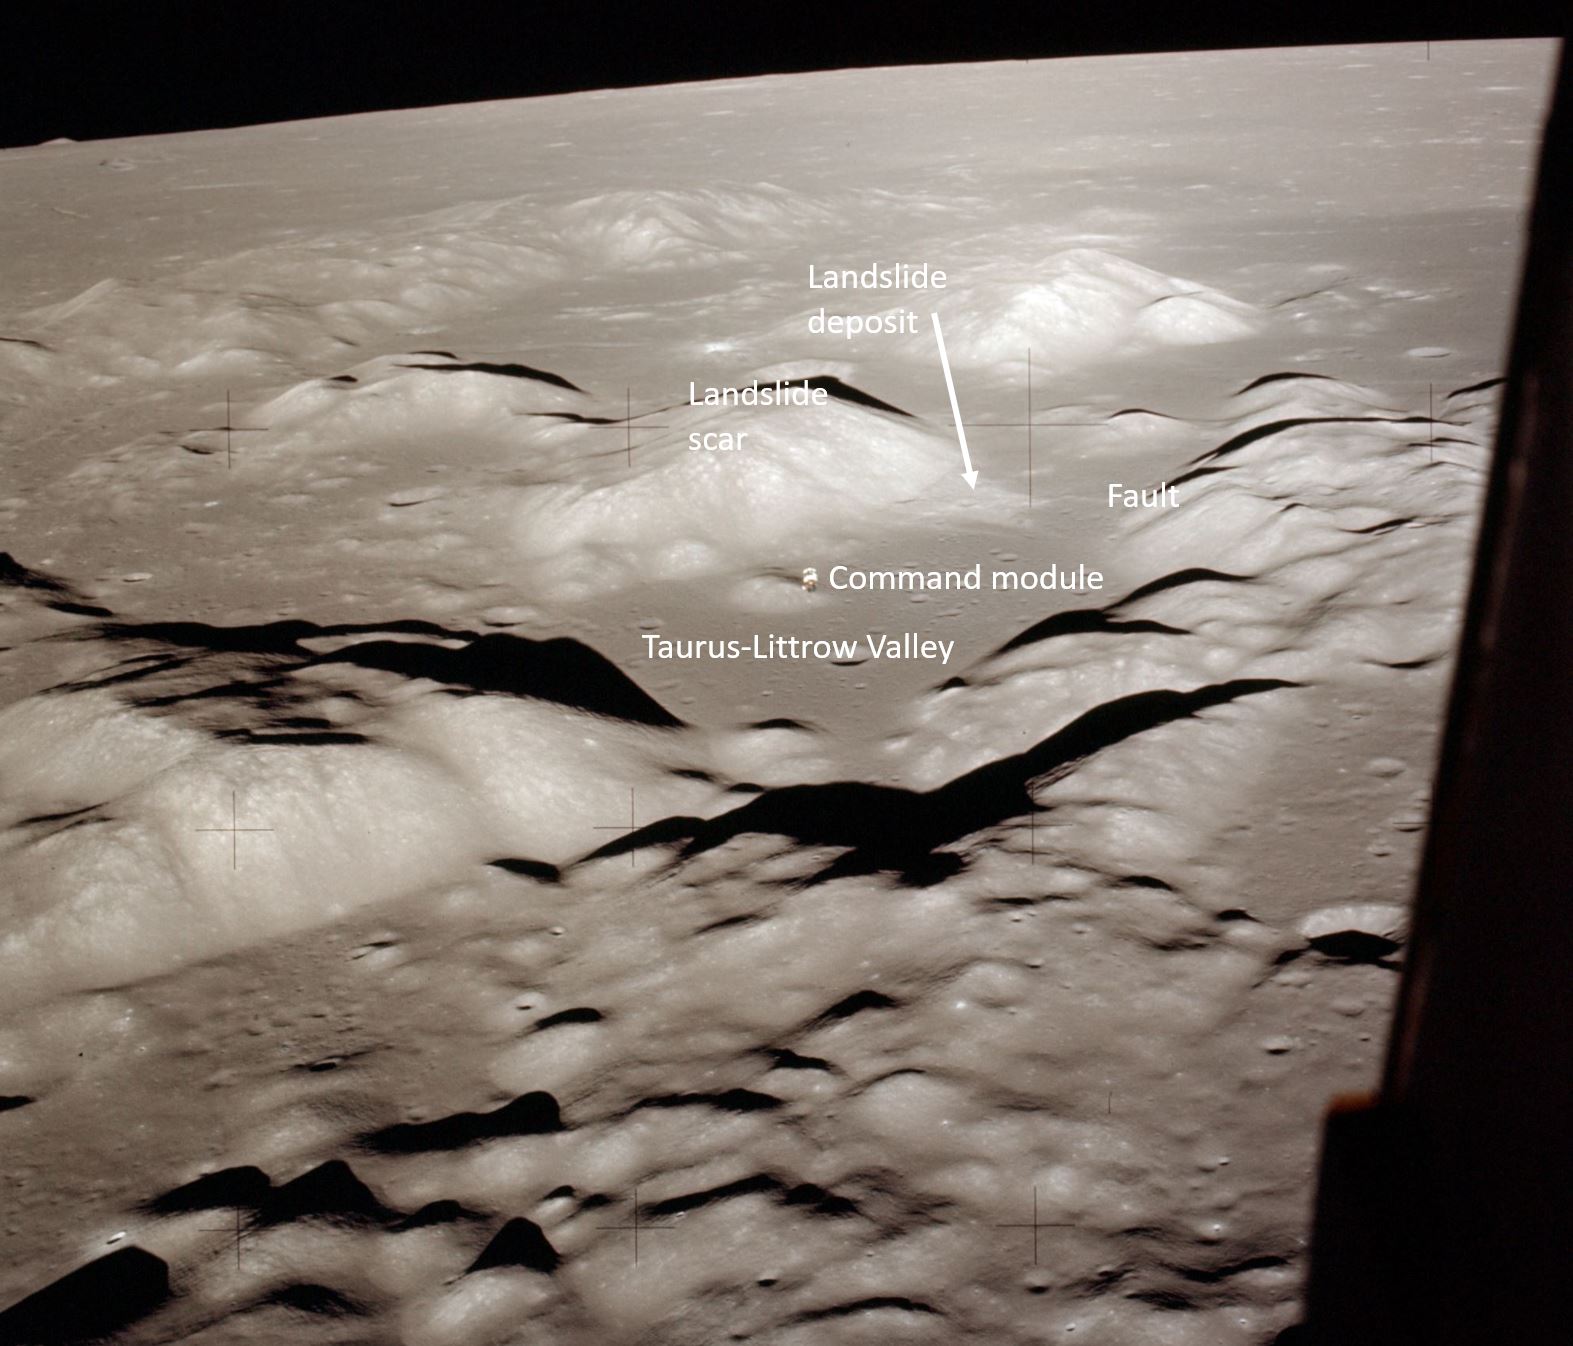 Landslide on the moon